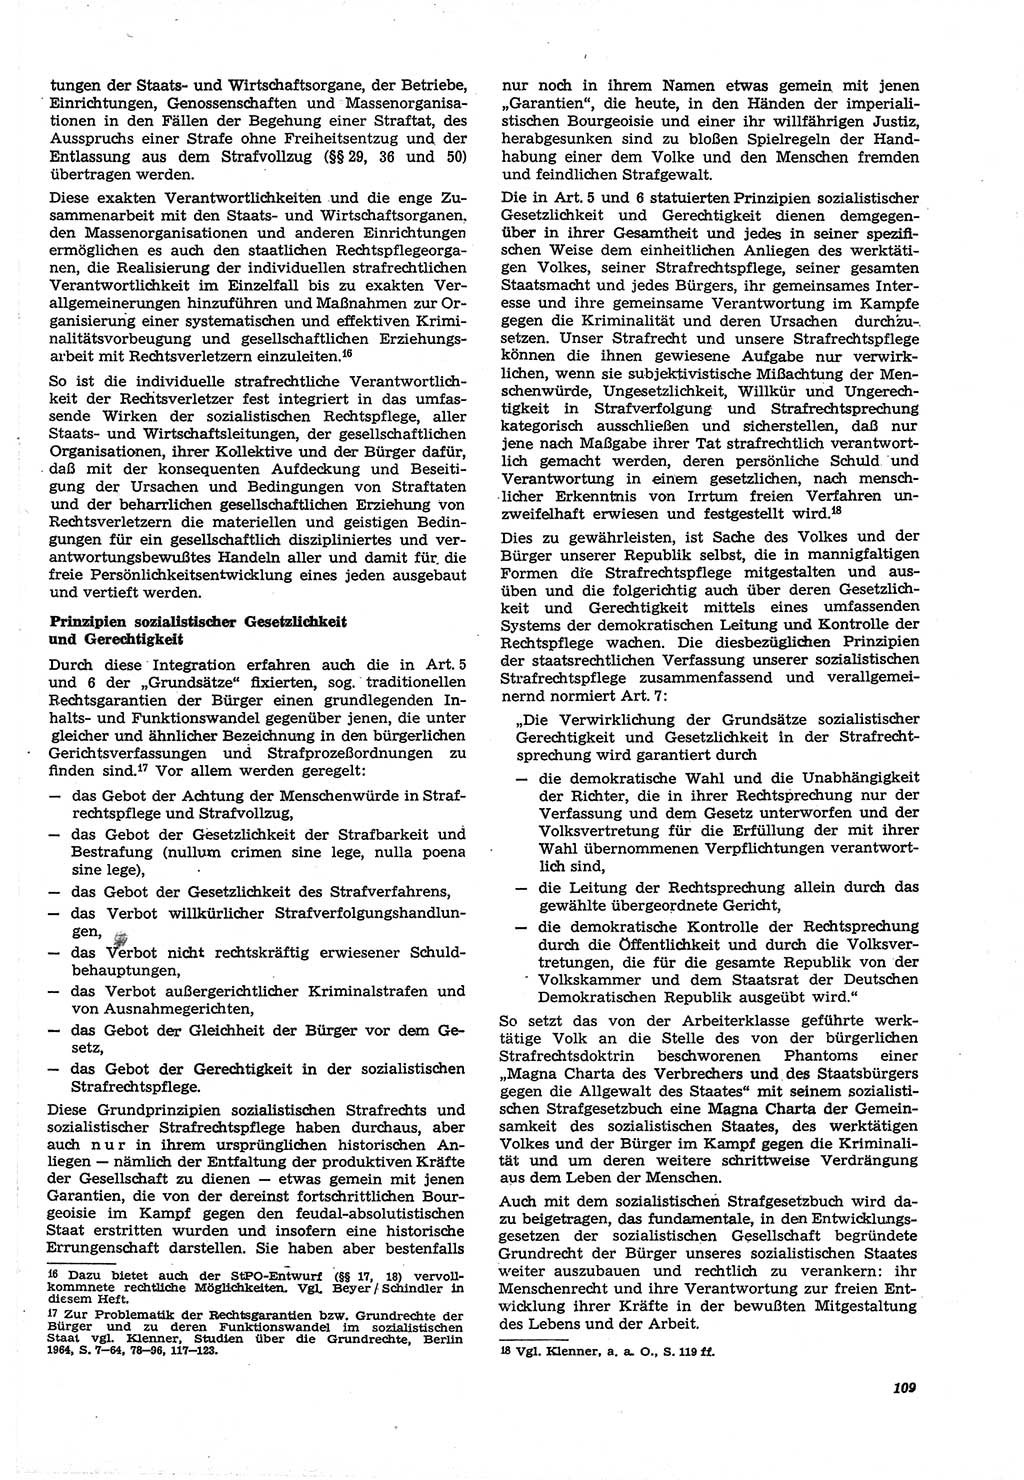 Neue Justiz (NJ), Zeitschrift für Recht und Rechtswissenschaft [Deutsche Demokratische Republik (DDR)], 21. Jahrgang 1967, Seite 109 (NJ DDR 1967, S. 109)